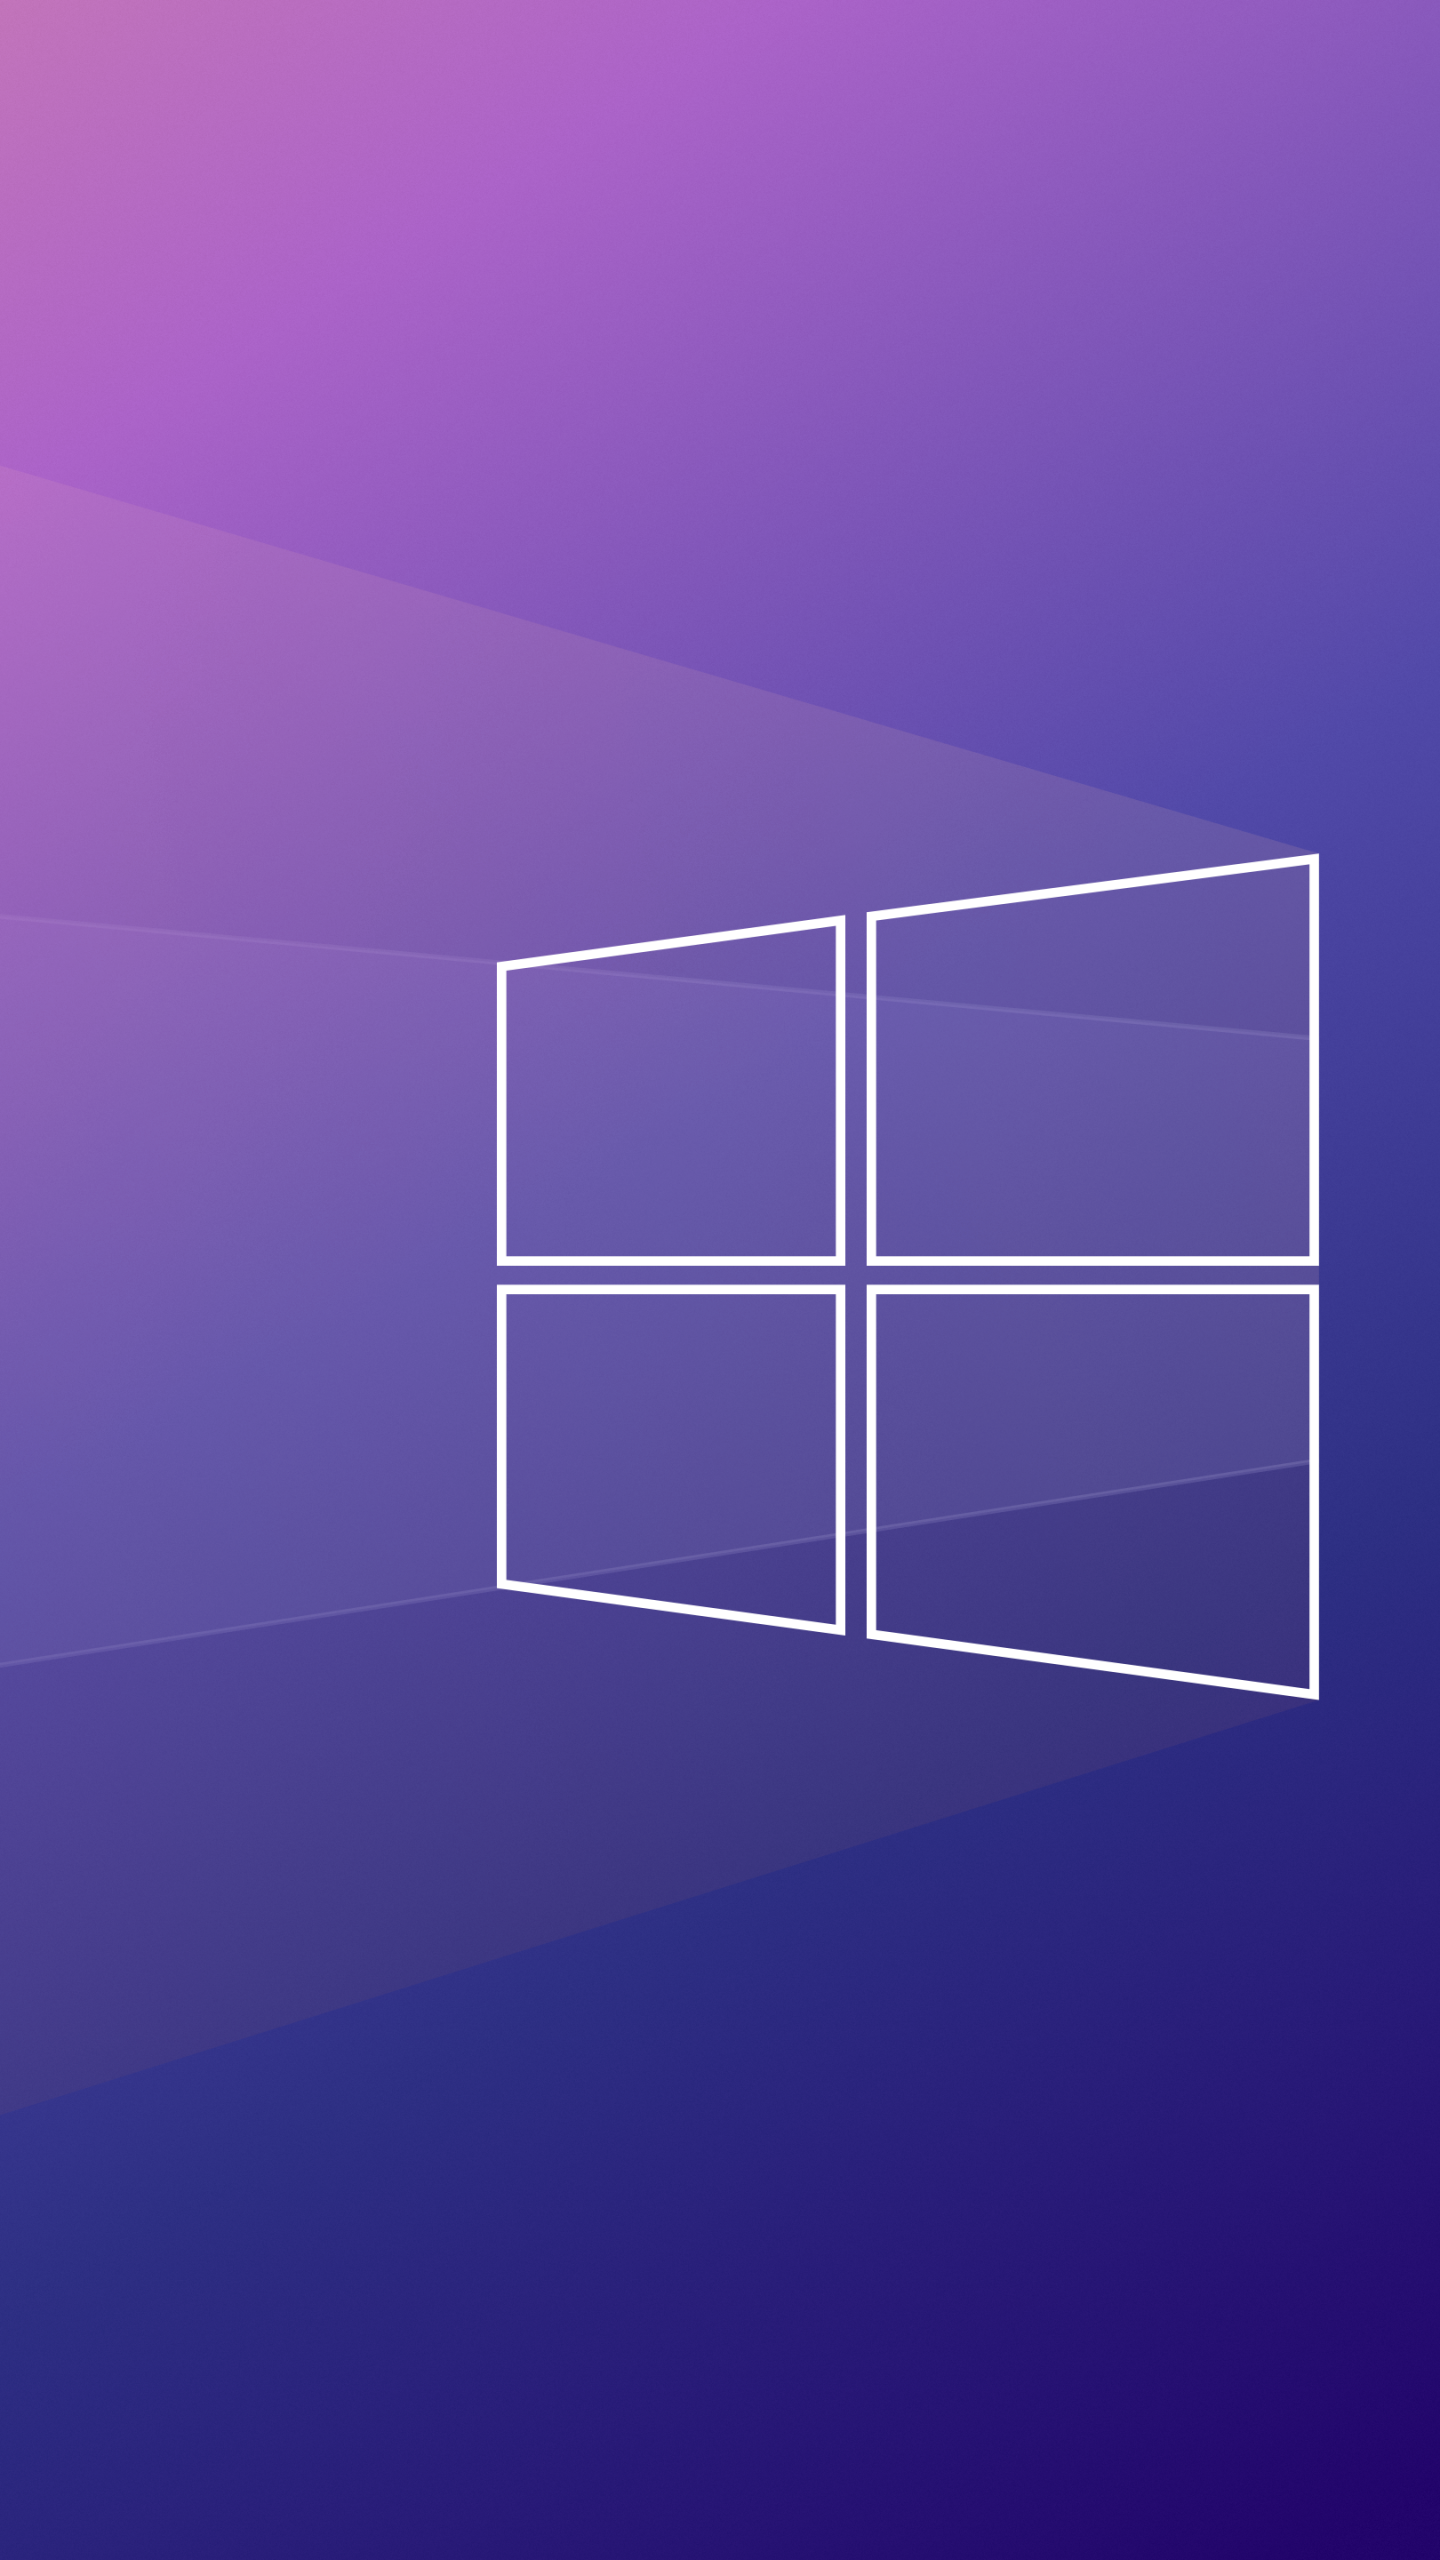 Hình nền Windows 10 4K: Thưởng thức đẹp mắt và sống động hơn bao giờ hết với Hình nền Windows 10 4K. Hình ảnh với độ phân giải cao và màu sắc sống động sẽ khiến bạn sử dụng máy tính thêm thu hút và thú vị.